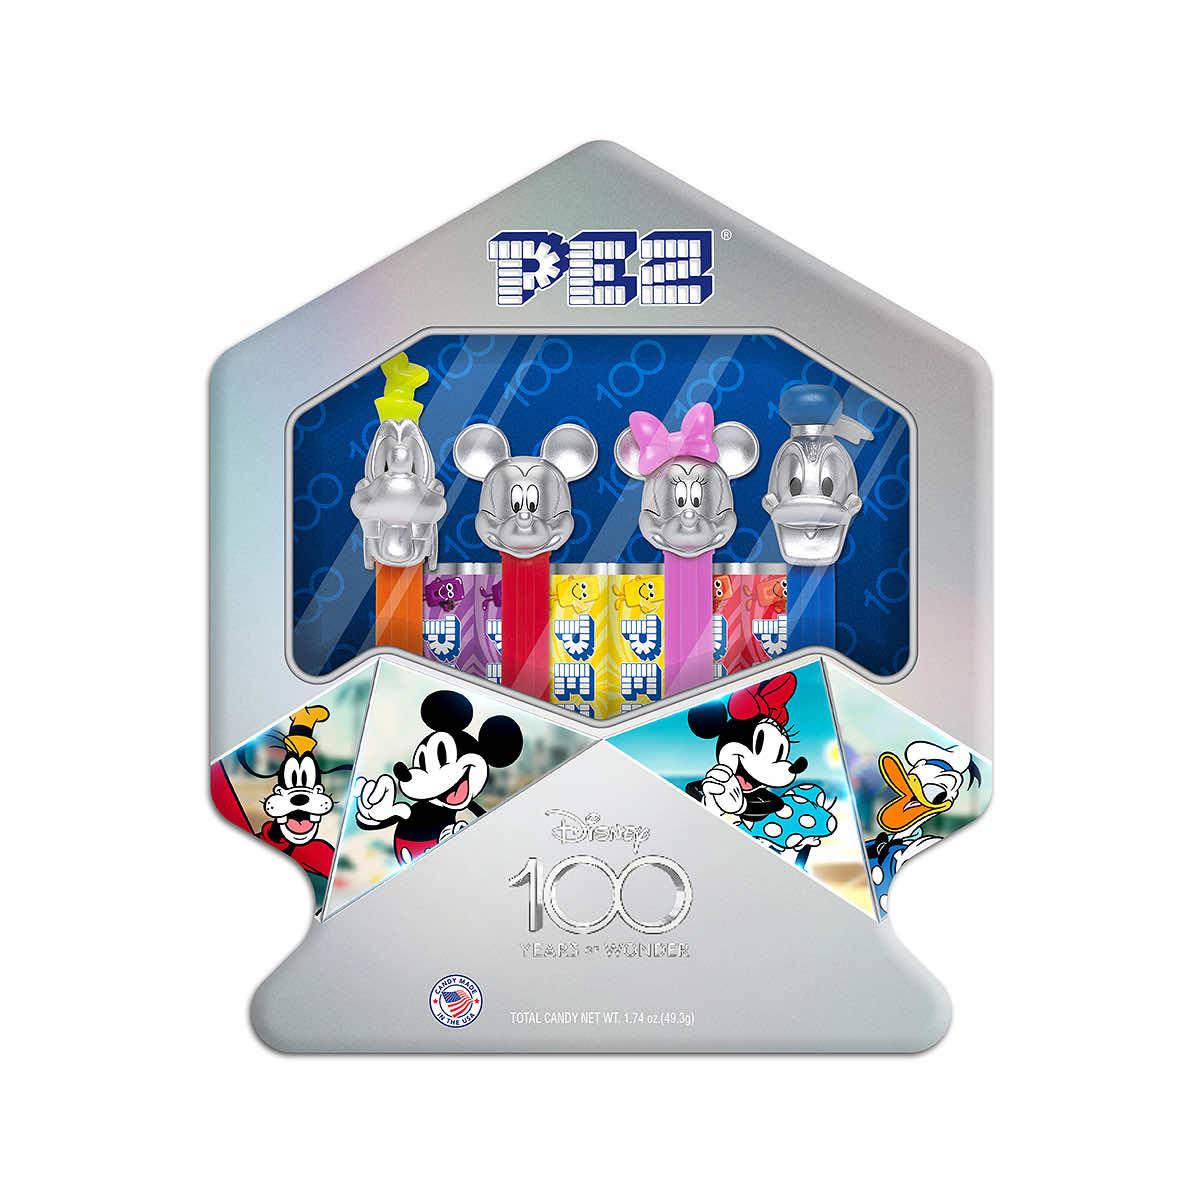 Disney 100 Years of Wonder PEZ Gift Tin Candy